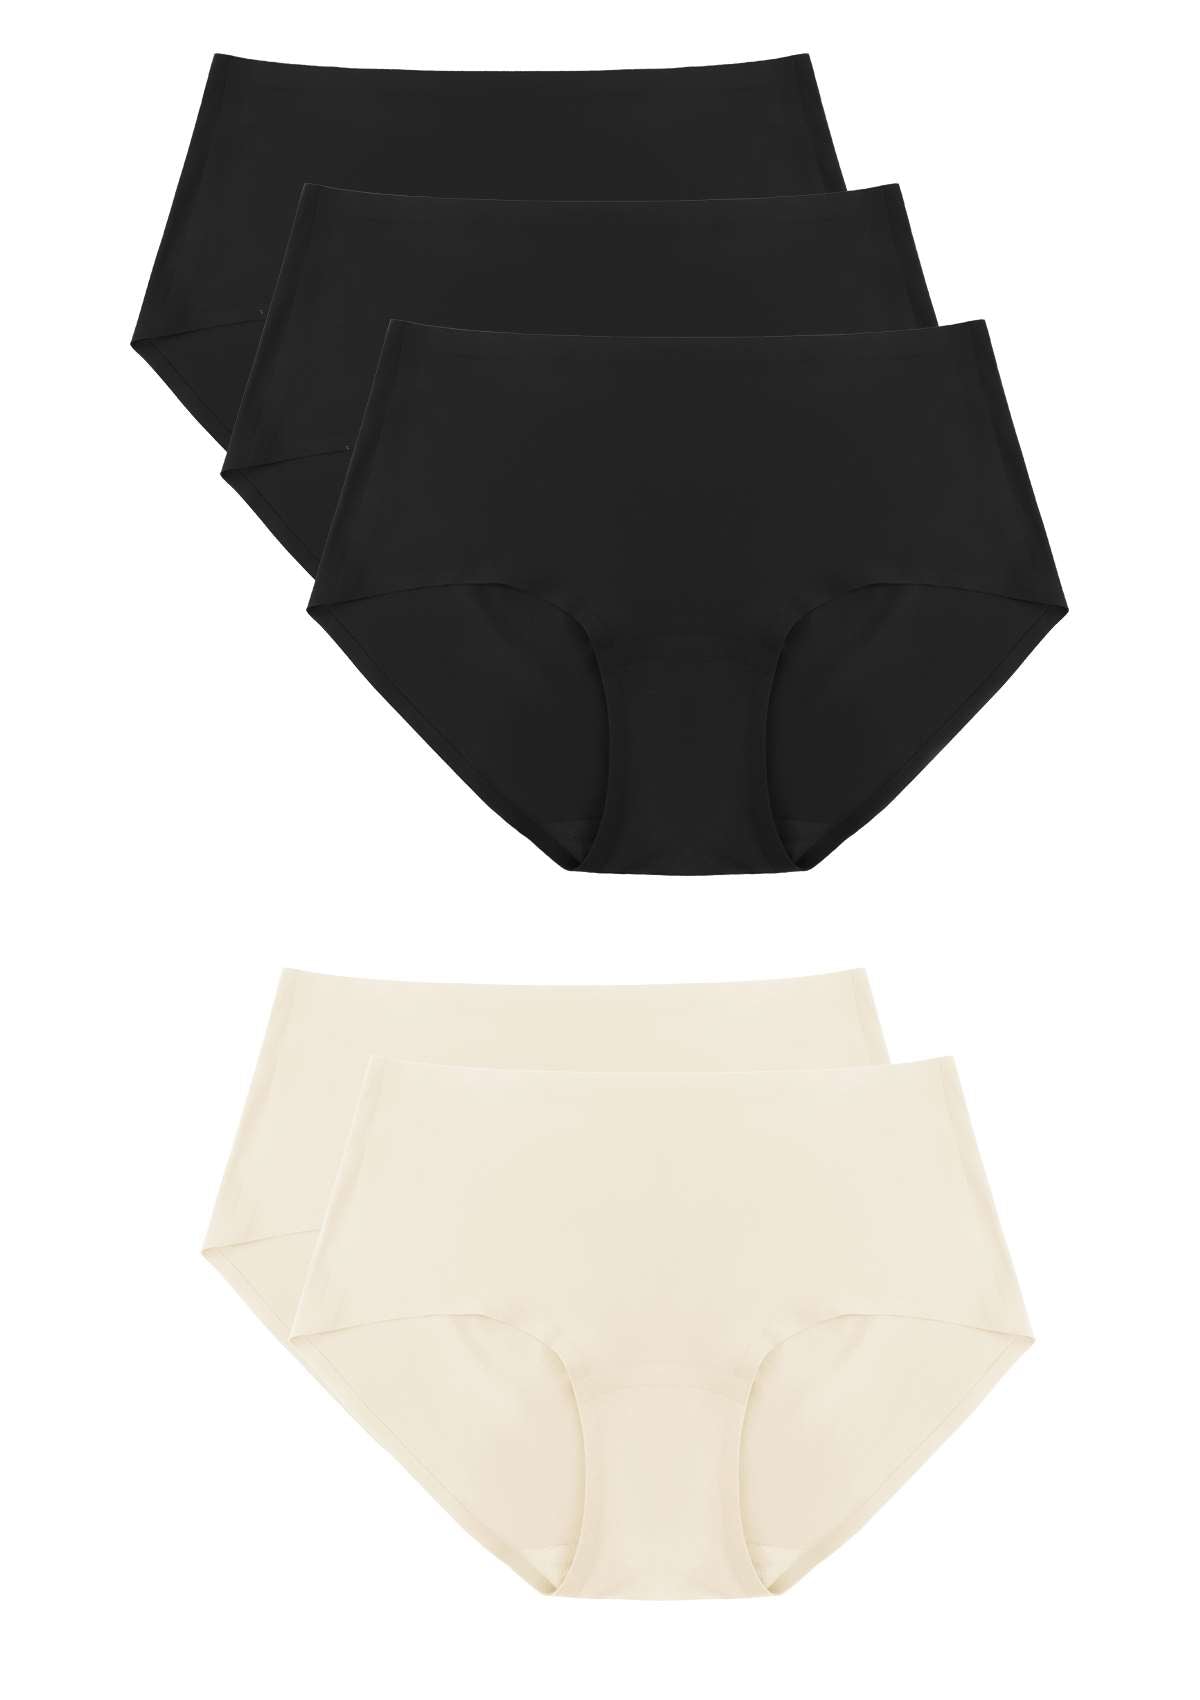 HSIA FlexiFit Soft Stretch Seamless Brief Underwear Bundle - 5 Packs/$20 / 2XL-4XL / 3*Black+2*Peach Beige